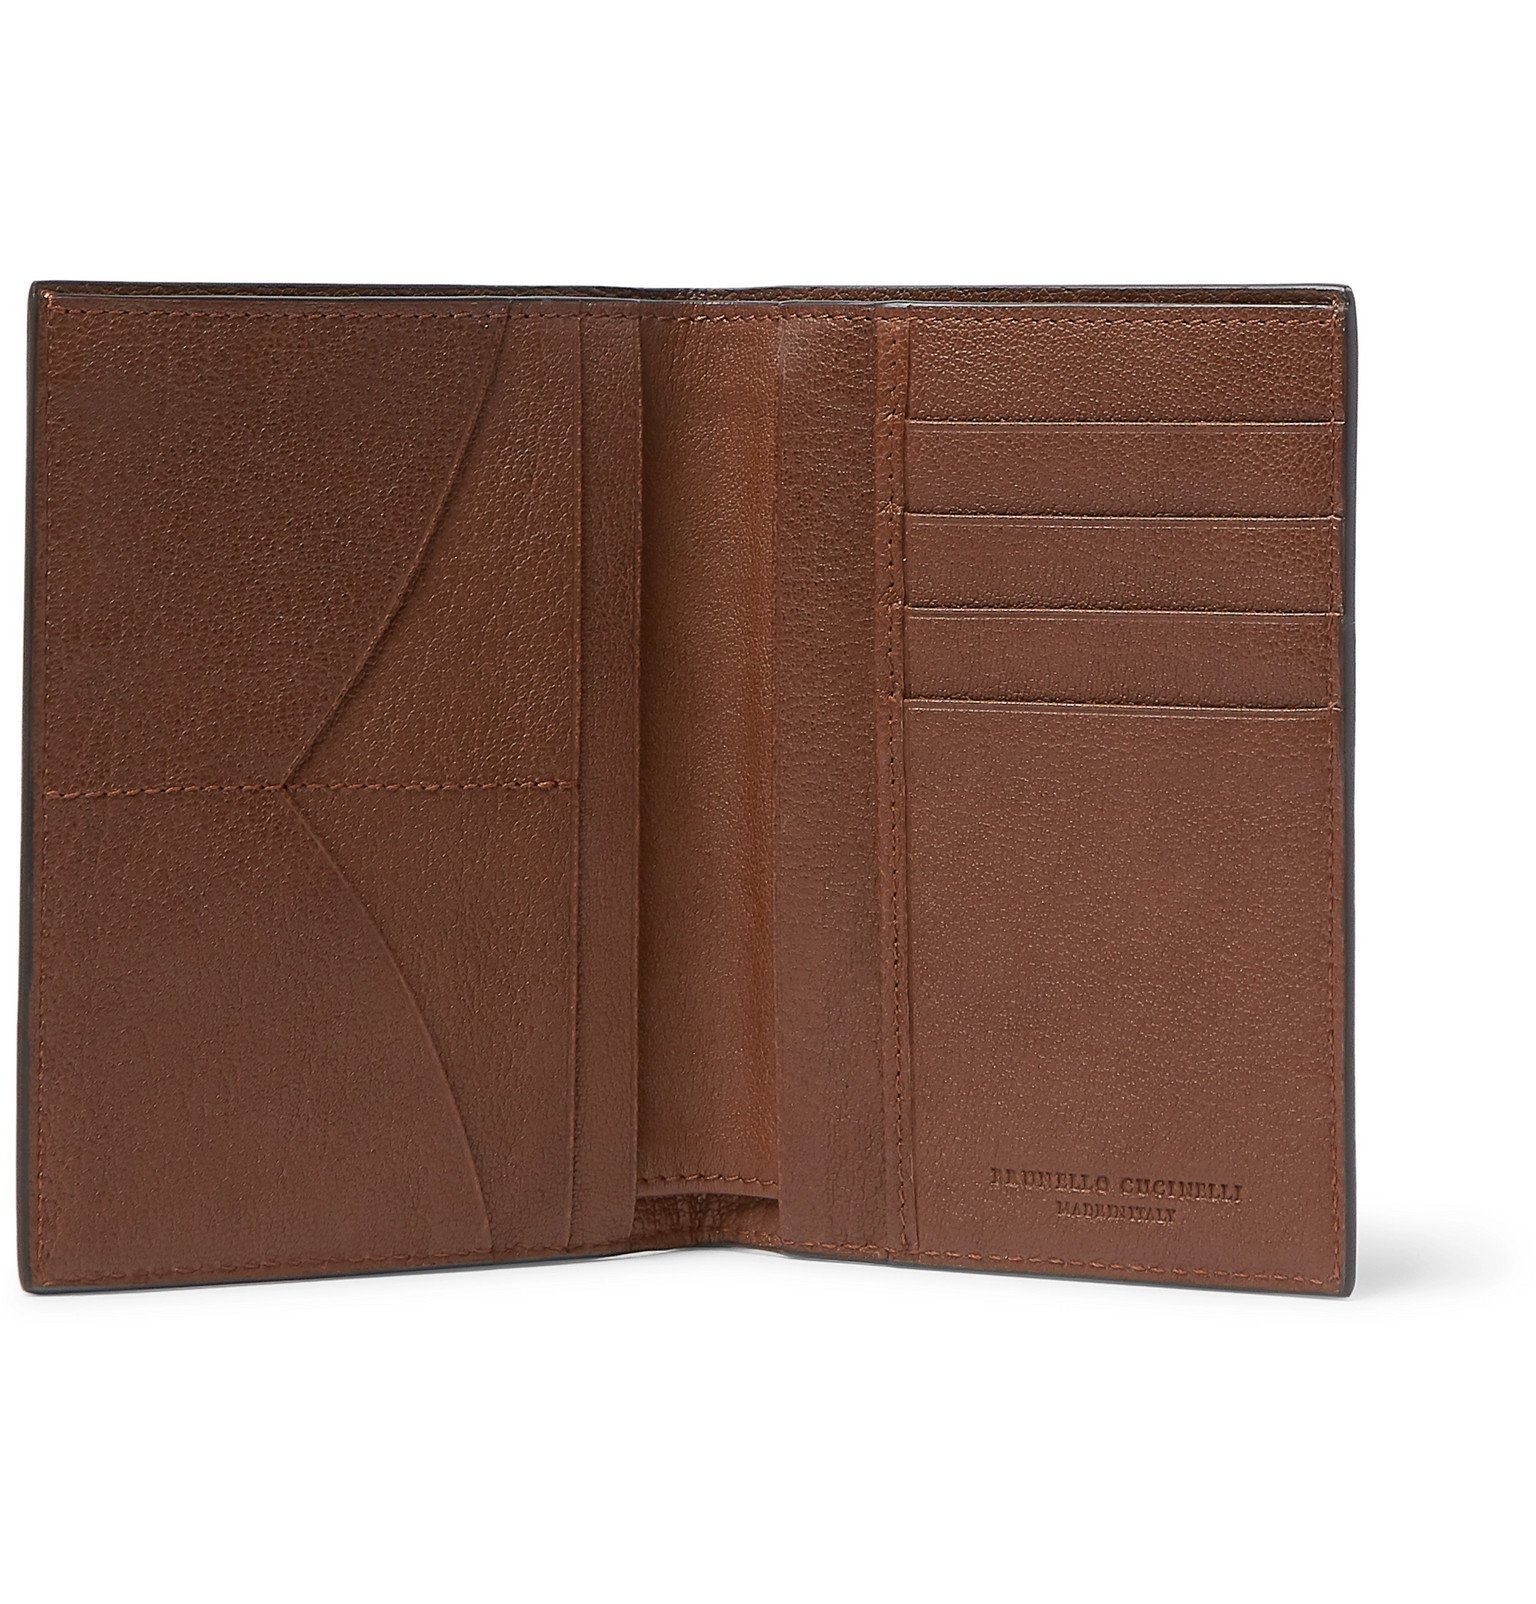 Brunello Cucinelli - Full-Grain Leather Passport Cover - Brown Brunello ...